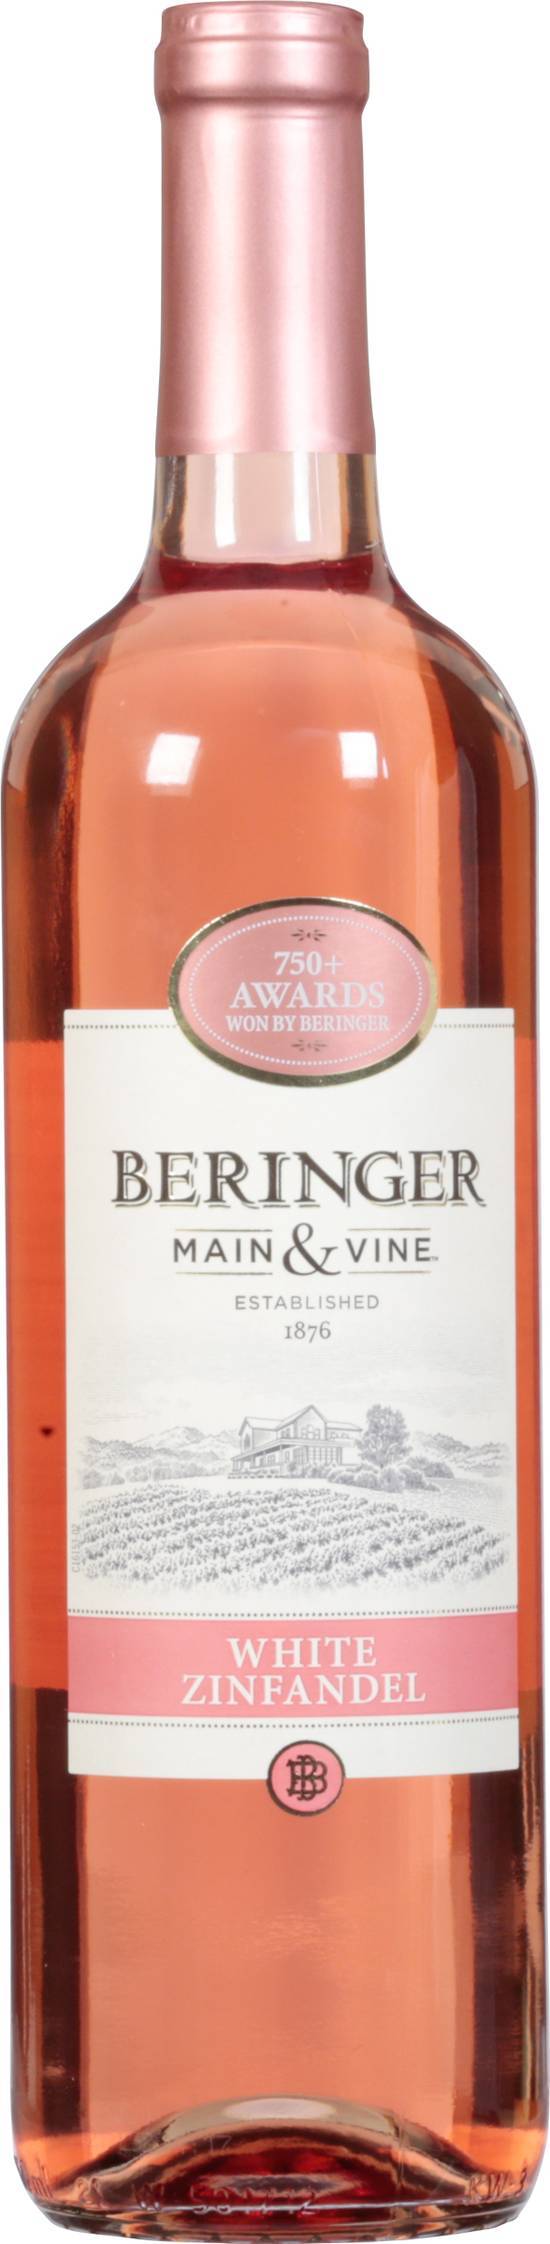 Beringer Main & Vine White Zinfandel Wine (750 ml)